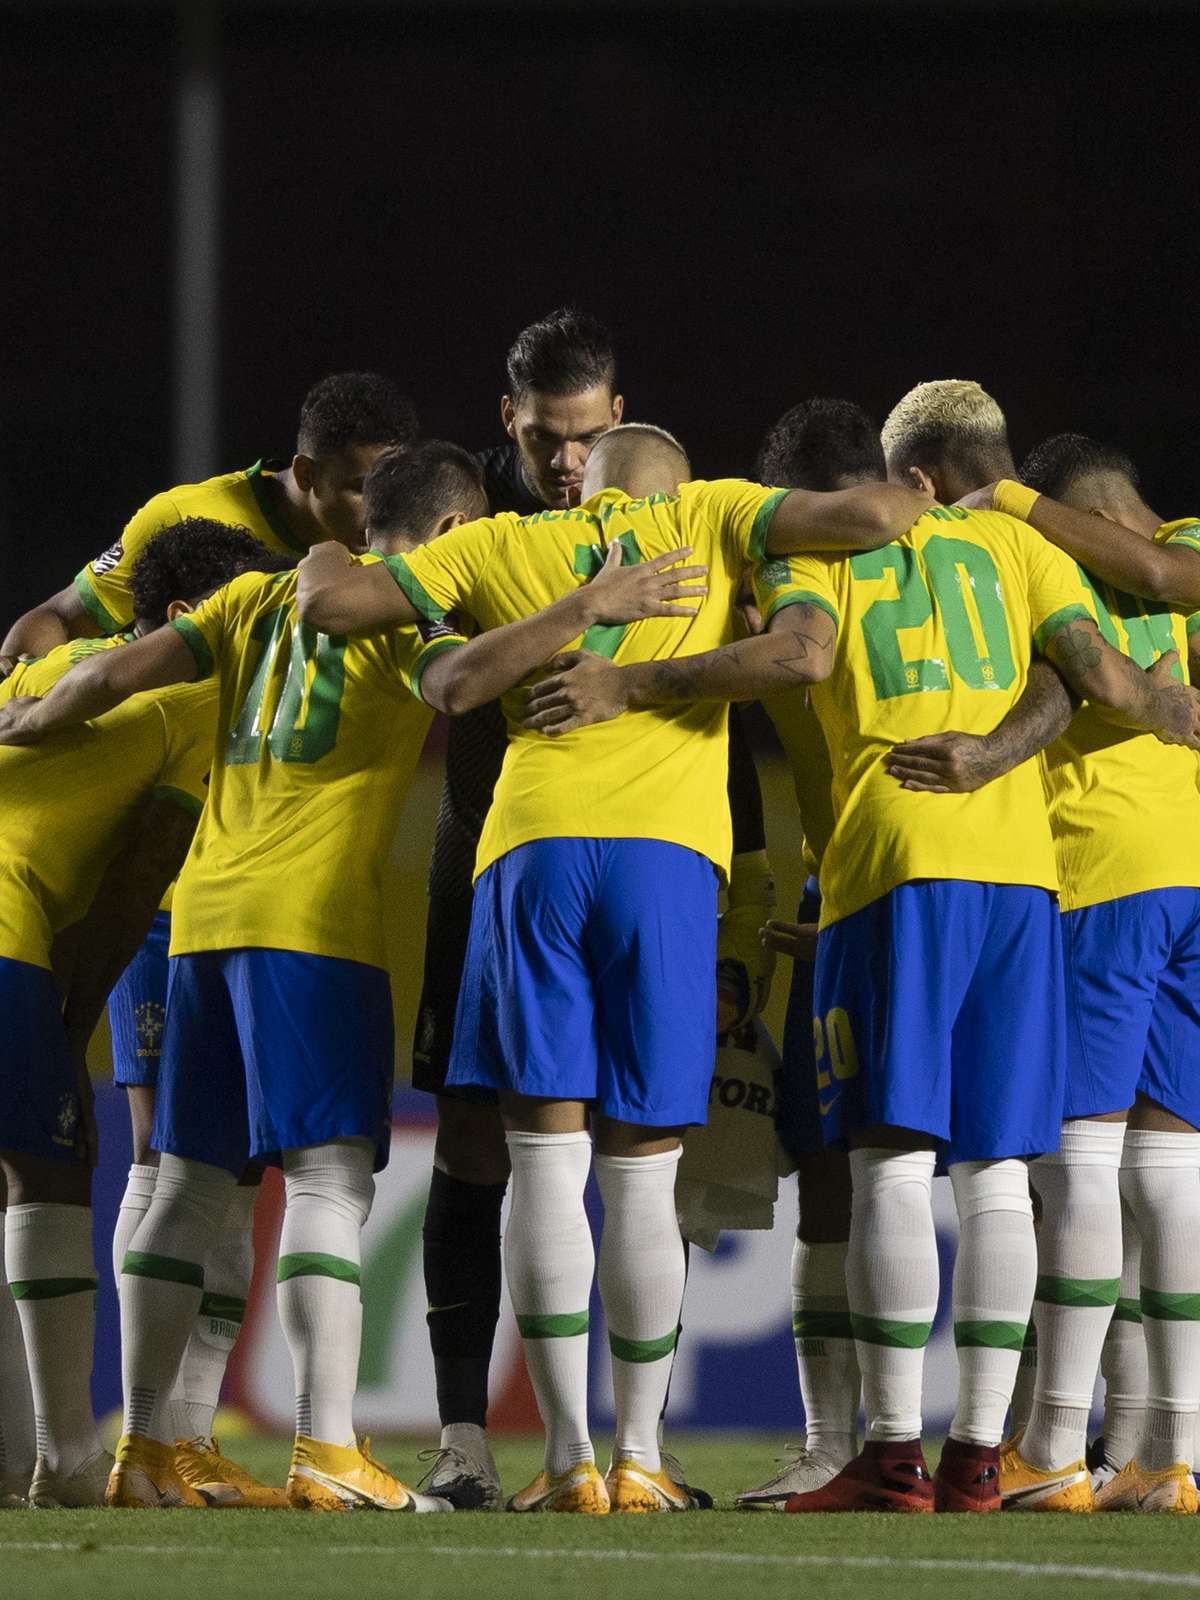 5 efeitos que o novo Mundial de Clubes da Fifa vai causar na TV brasileira